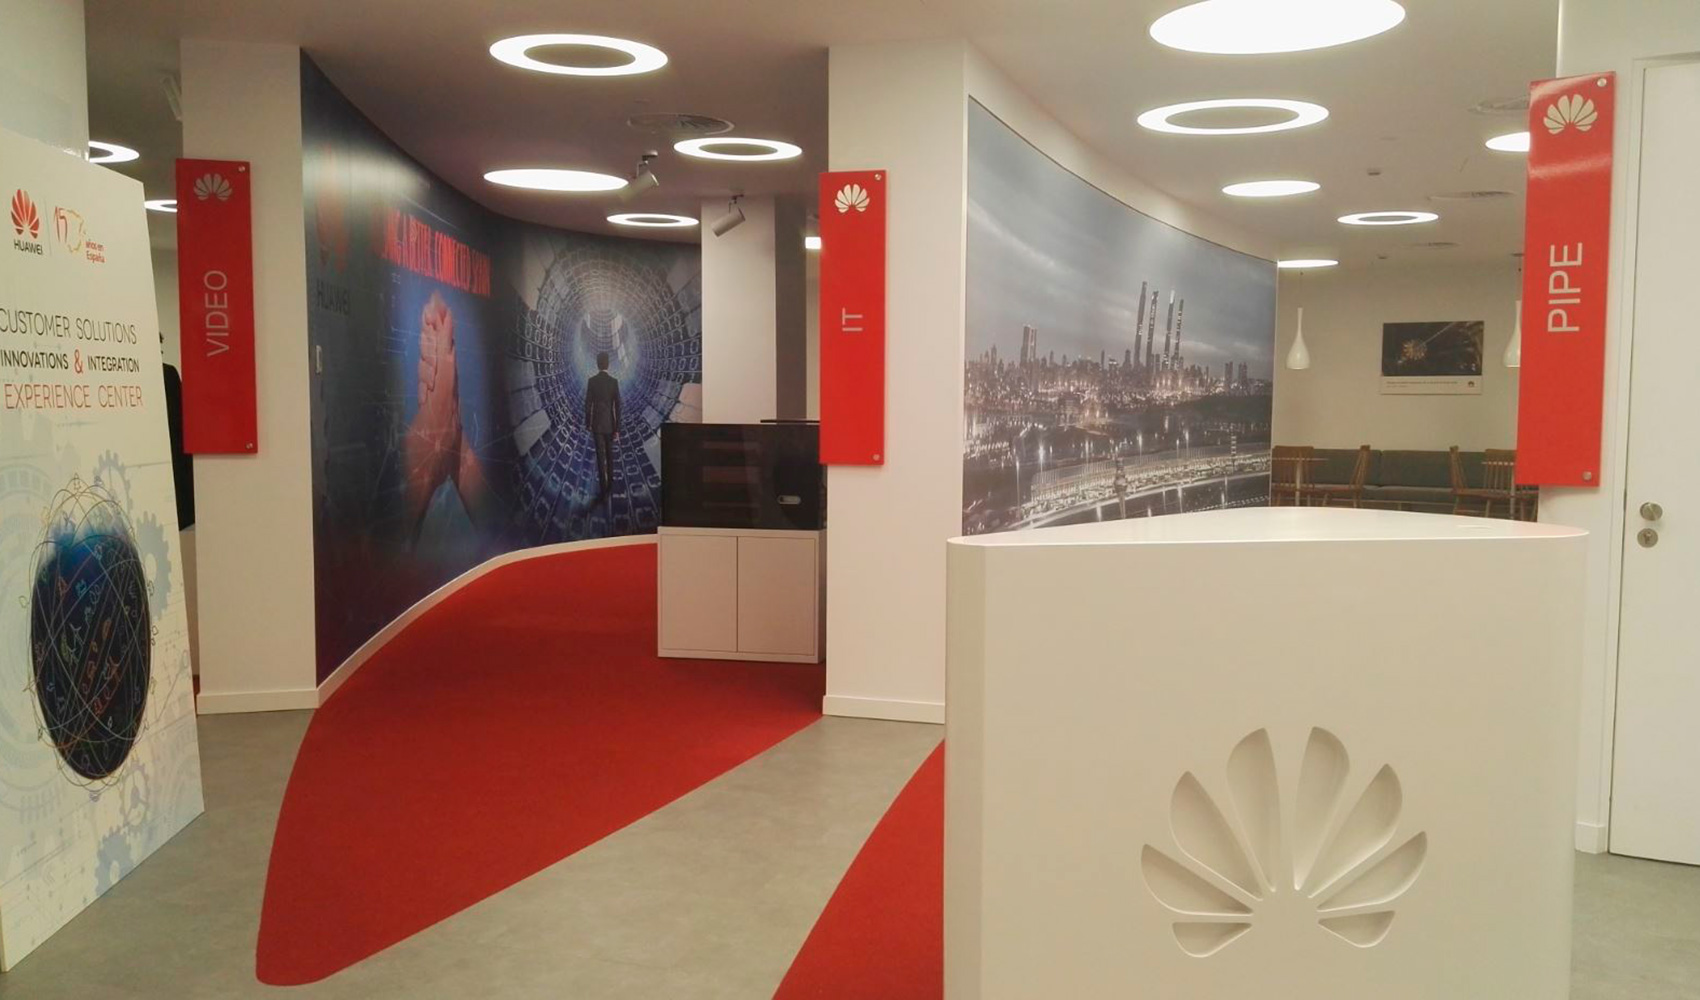 El nuevo centro de demostraciones de Huawei Espaa combina lo ltimo en tecnologa audiovisual y soluciones de redes, cloud computing...